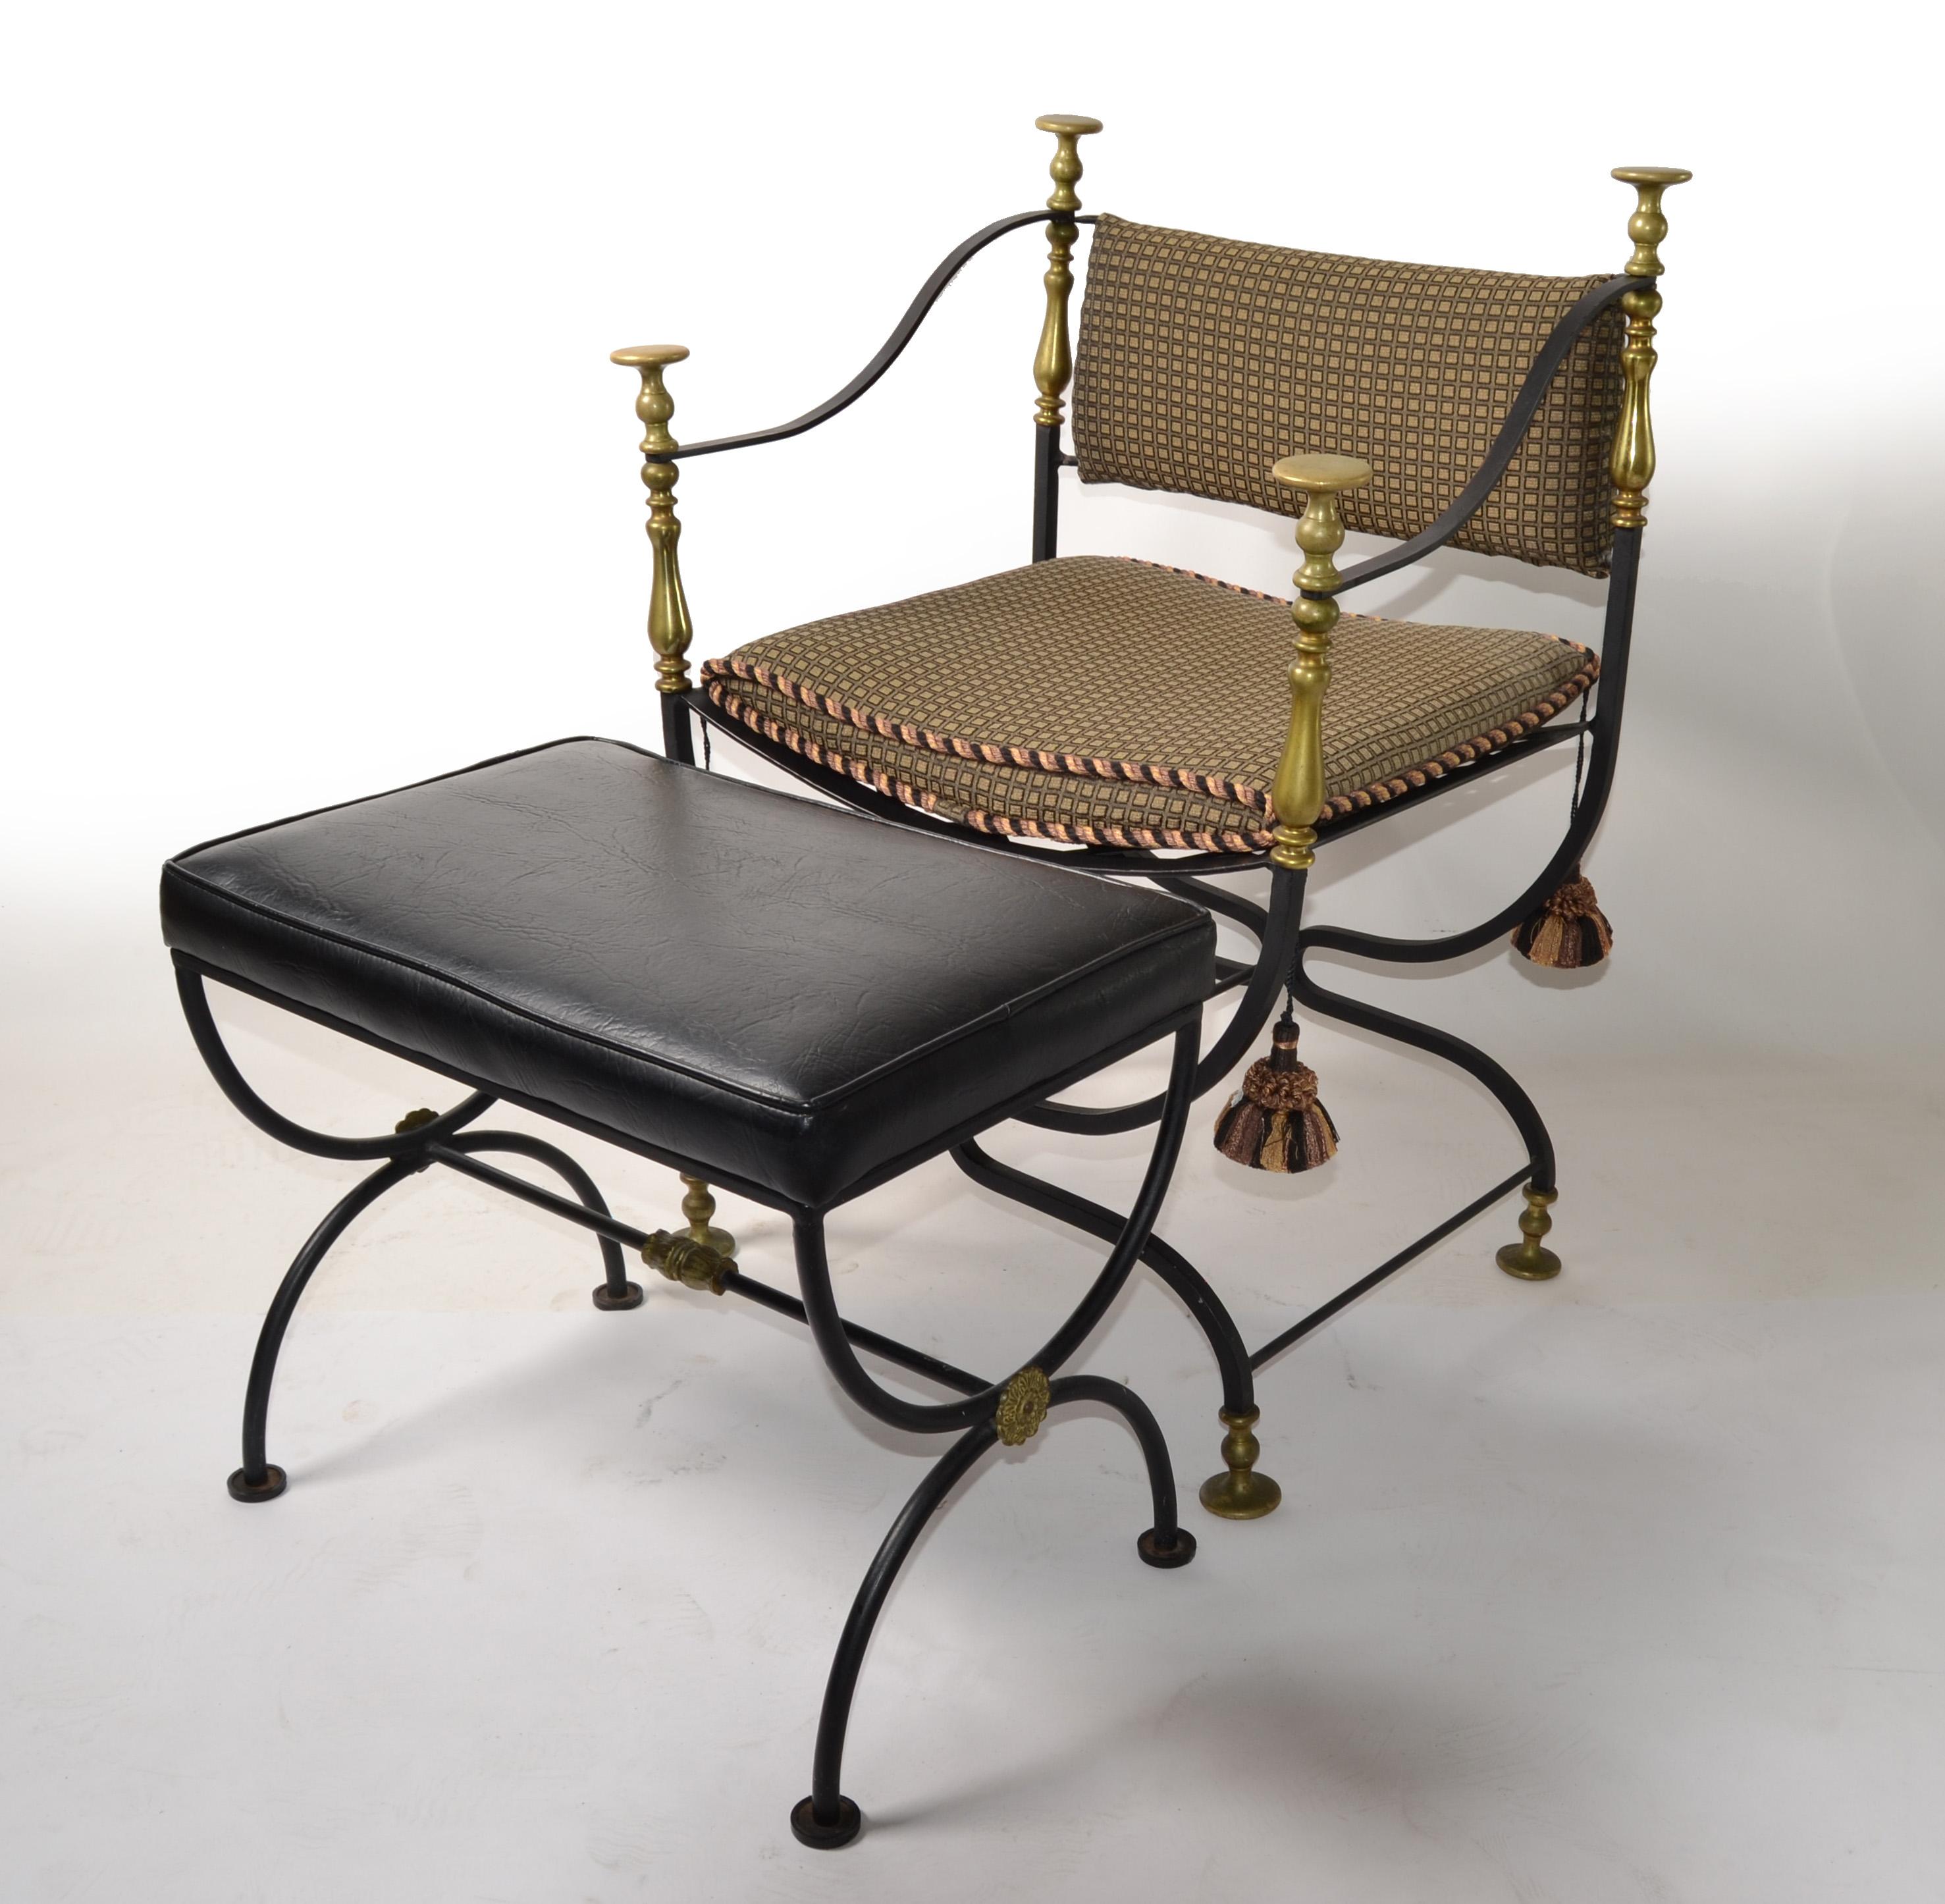 Mitte des 20. Jahrhunderts Satz von Faldistori, Savonarola Sessel und Hocker oder Bank in geschmiedet und Schmiedeeisen, mit original polierter Bronze Knöpfe und Medaillons Messing Ornamente.
Der Accent Chair hat die originalen Sitz- und